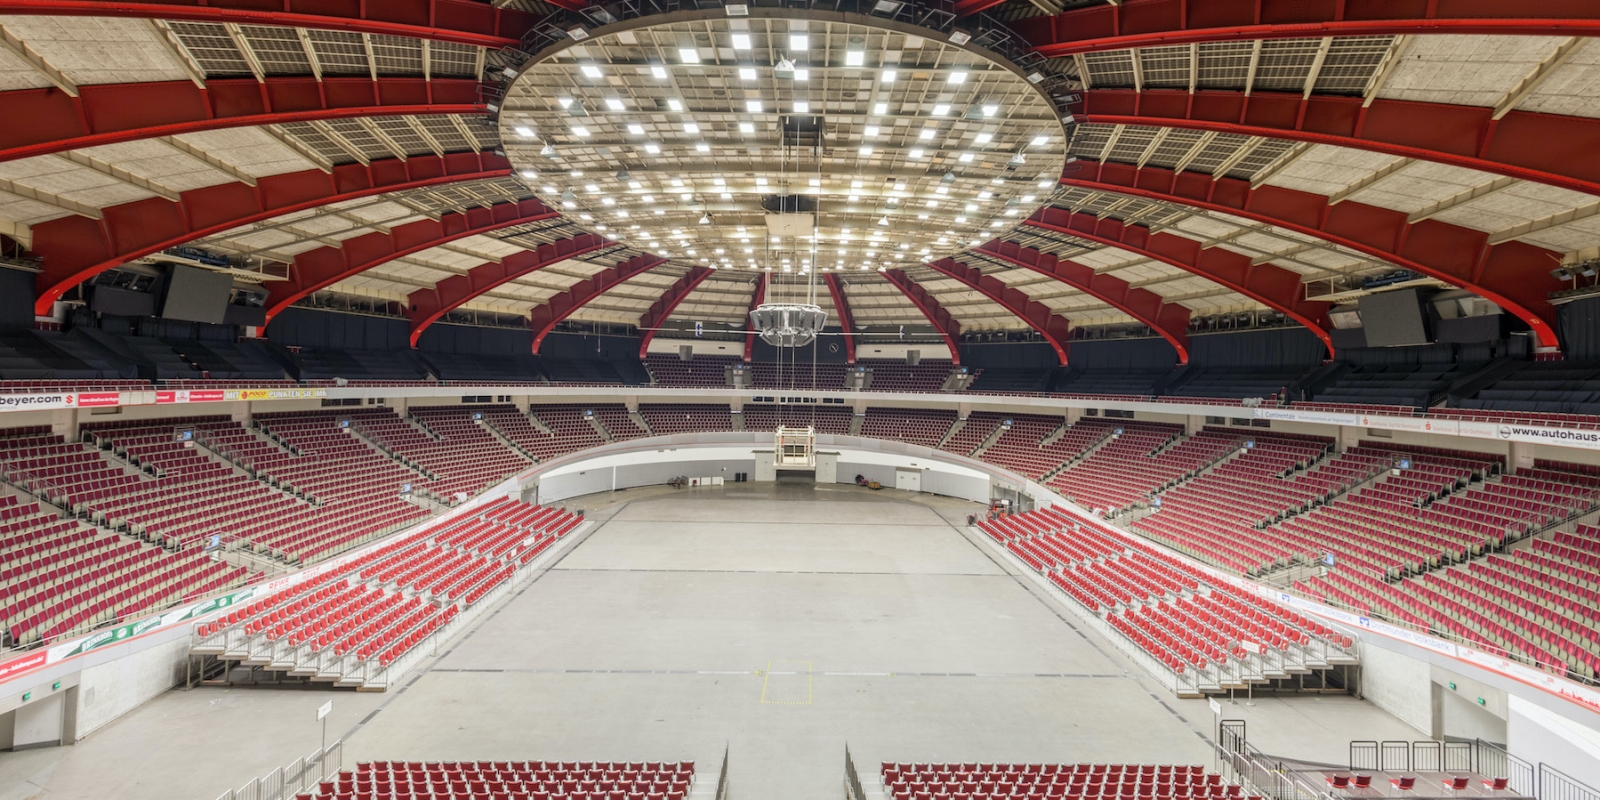 Die Westfalenhalle, eine Multifunktionssporthalle in Dortmund aus der Innenansicht, ist innen im Rot-cremefarbenen Farbdesign gestaltet und völlig überdacht.